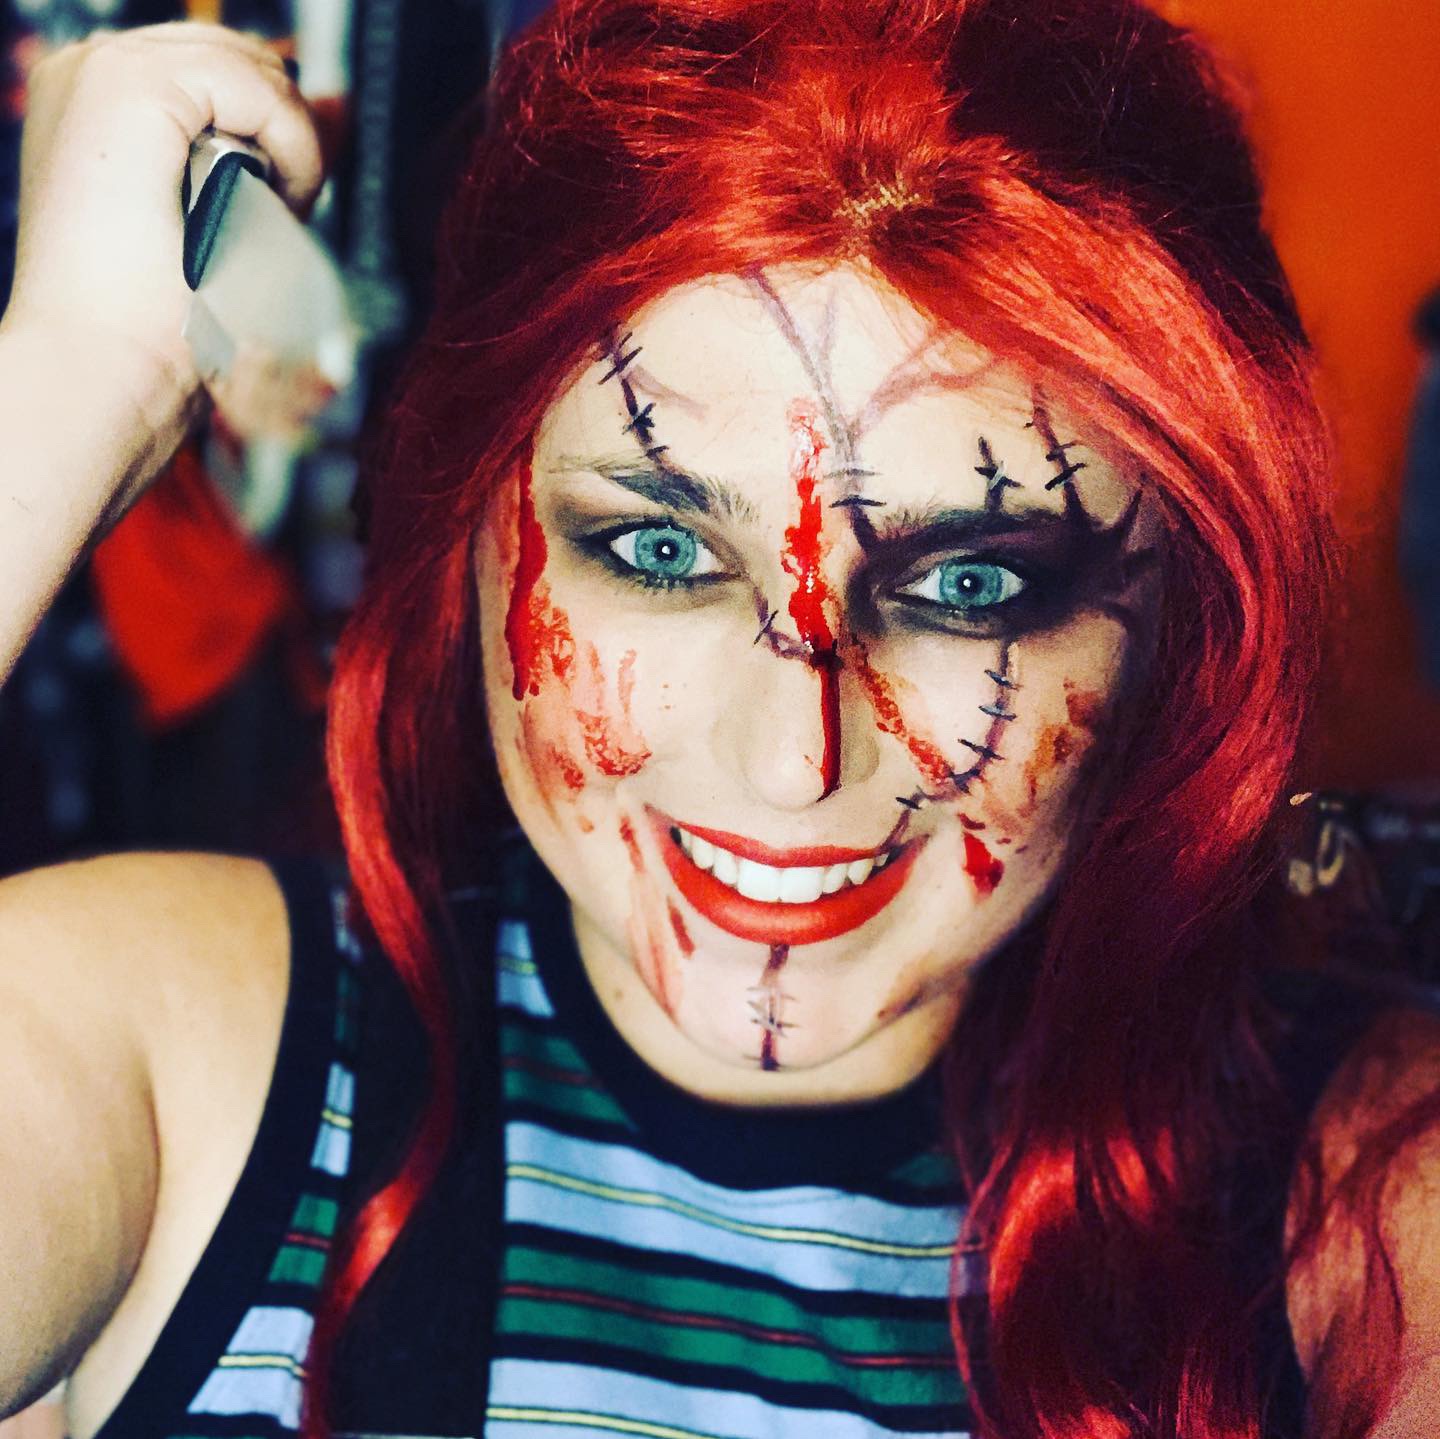 chucky the doll, halloween horror-themed makeup look